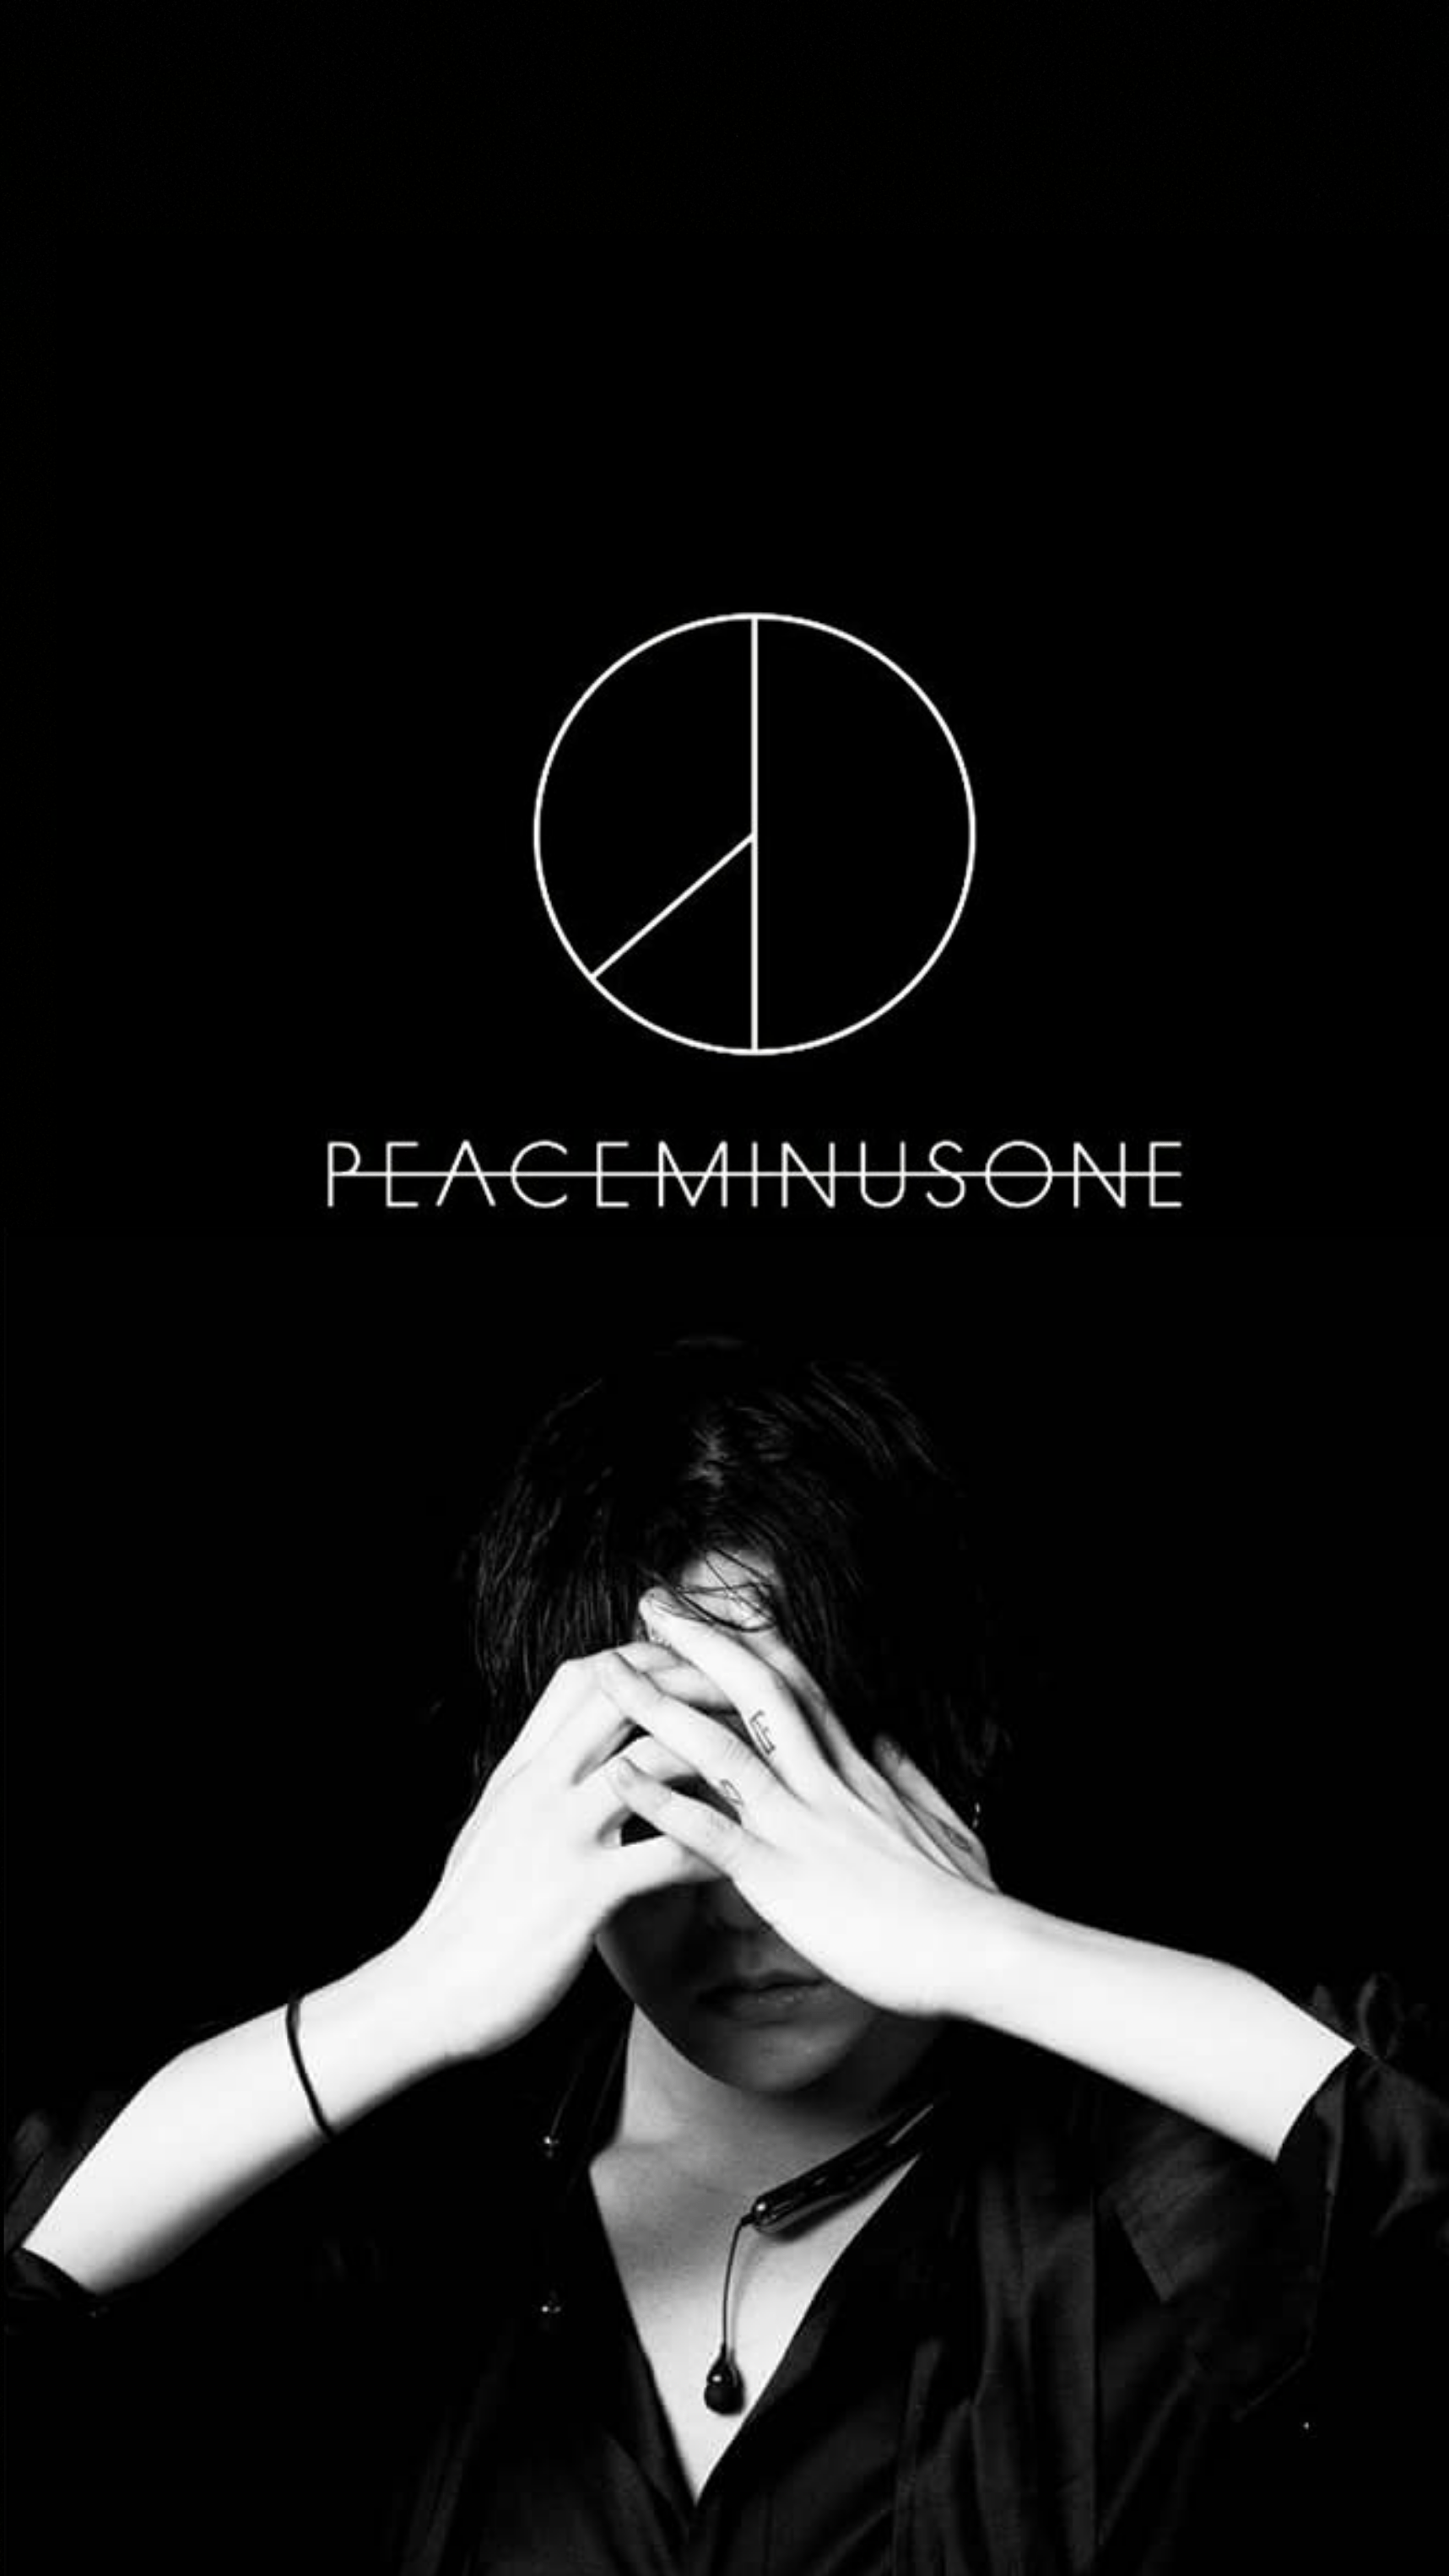 Peaceminusone: Chào mừng bạn đến với Peaceminusone - thương hiệu thời trang đến từ Hàn Quốc, nơi mang đến những thiết kế đầy sáng tạo và cá tính. Hãy cùng khám phá bộ sưu tập độc đáo và đầy màu sắc của Peaceminusone!